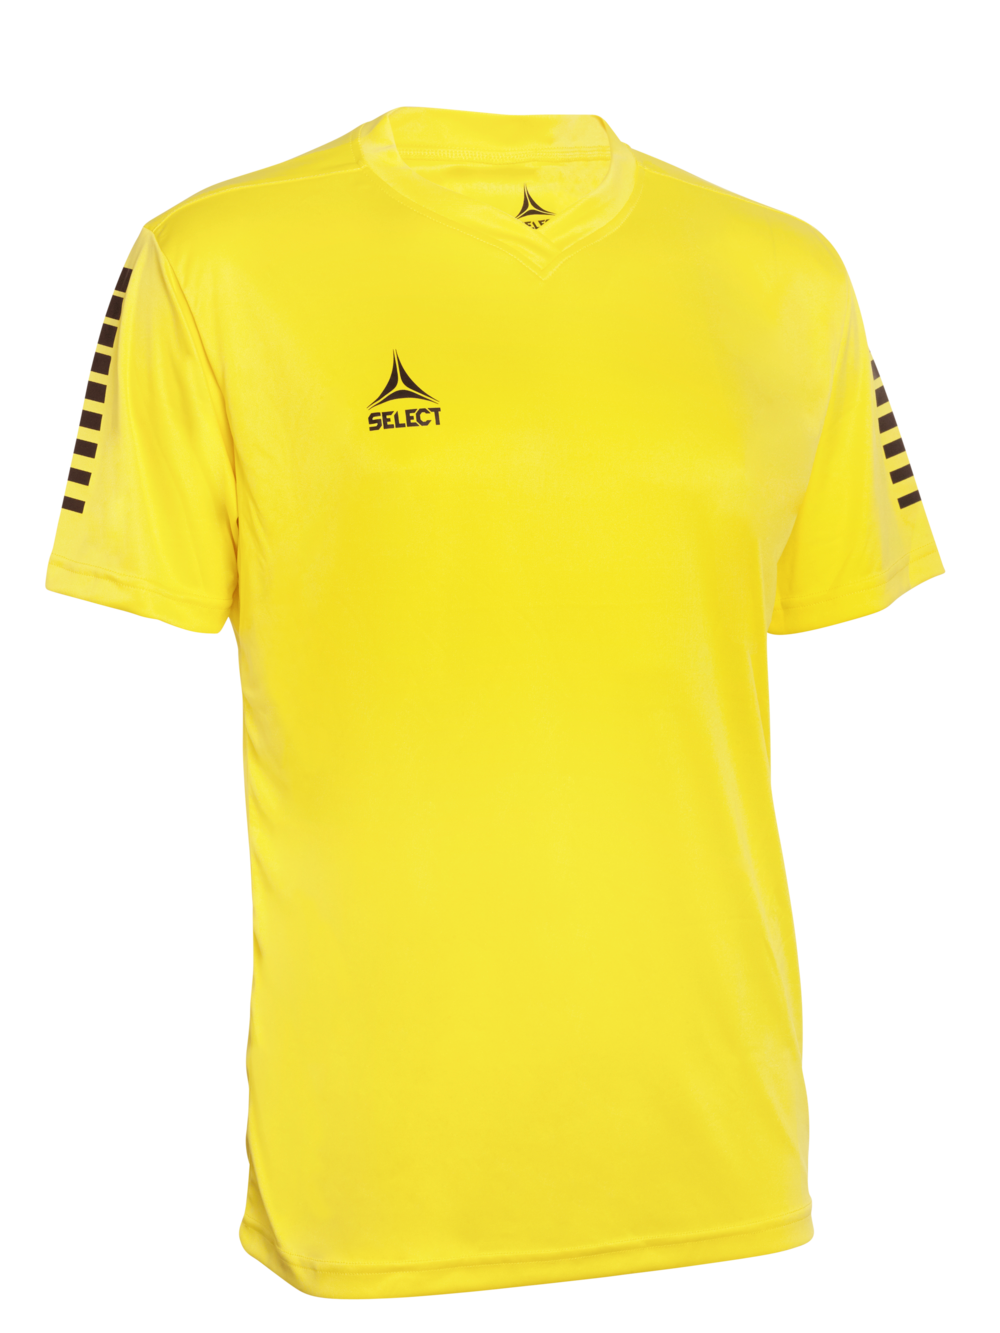 pisa_player_shirt_s-s_yellow_black